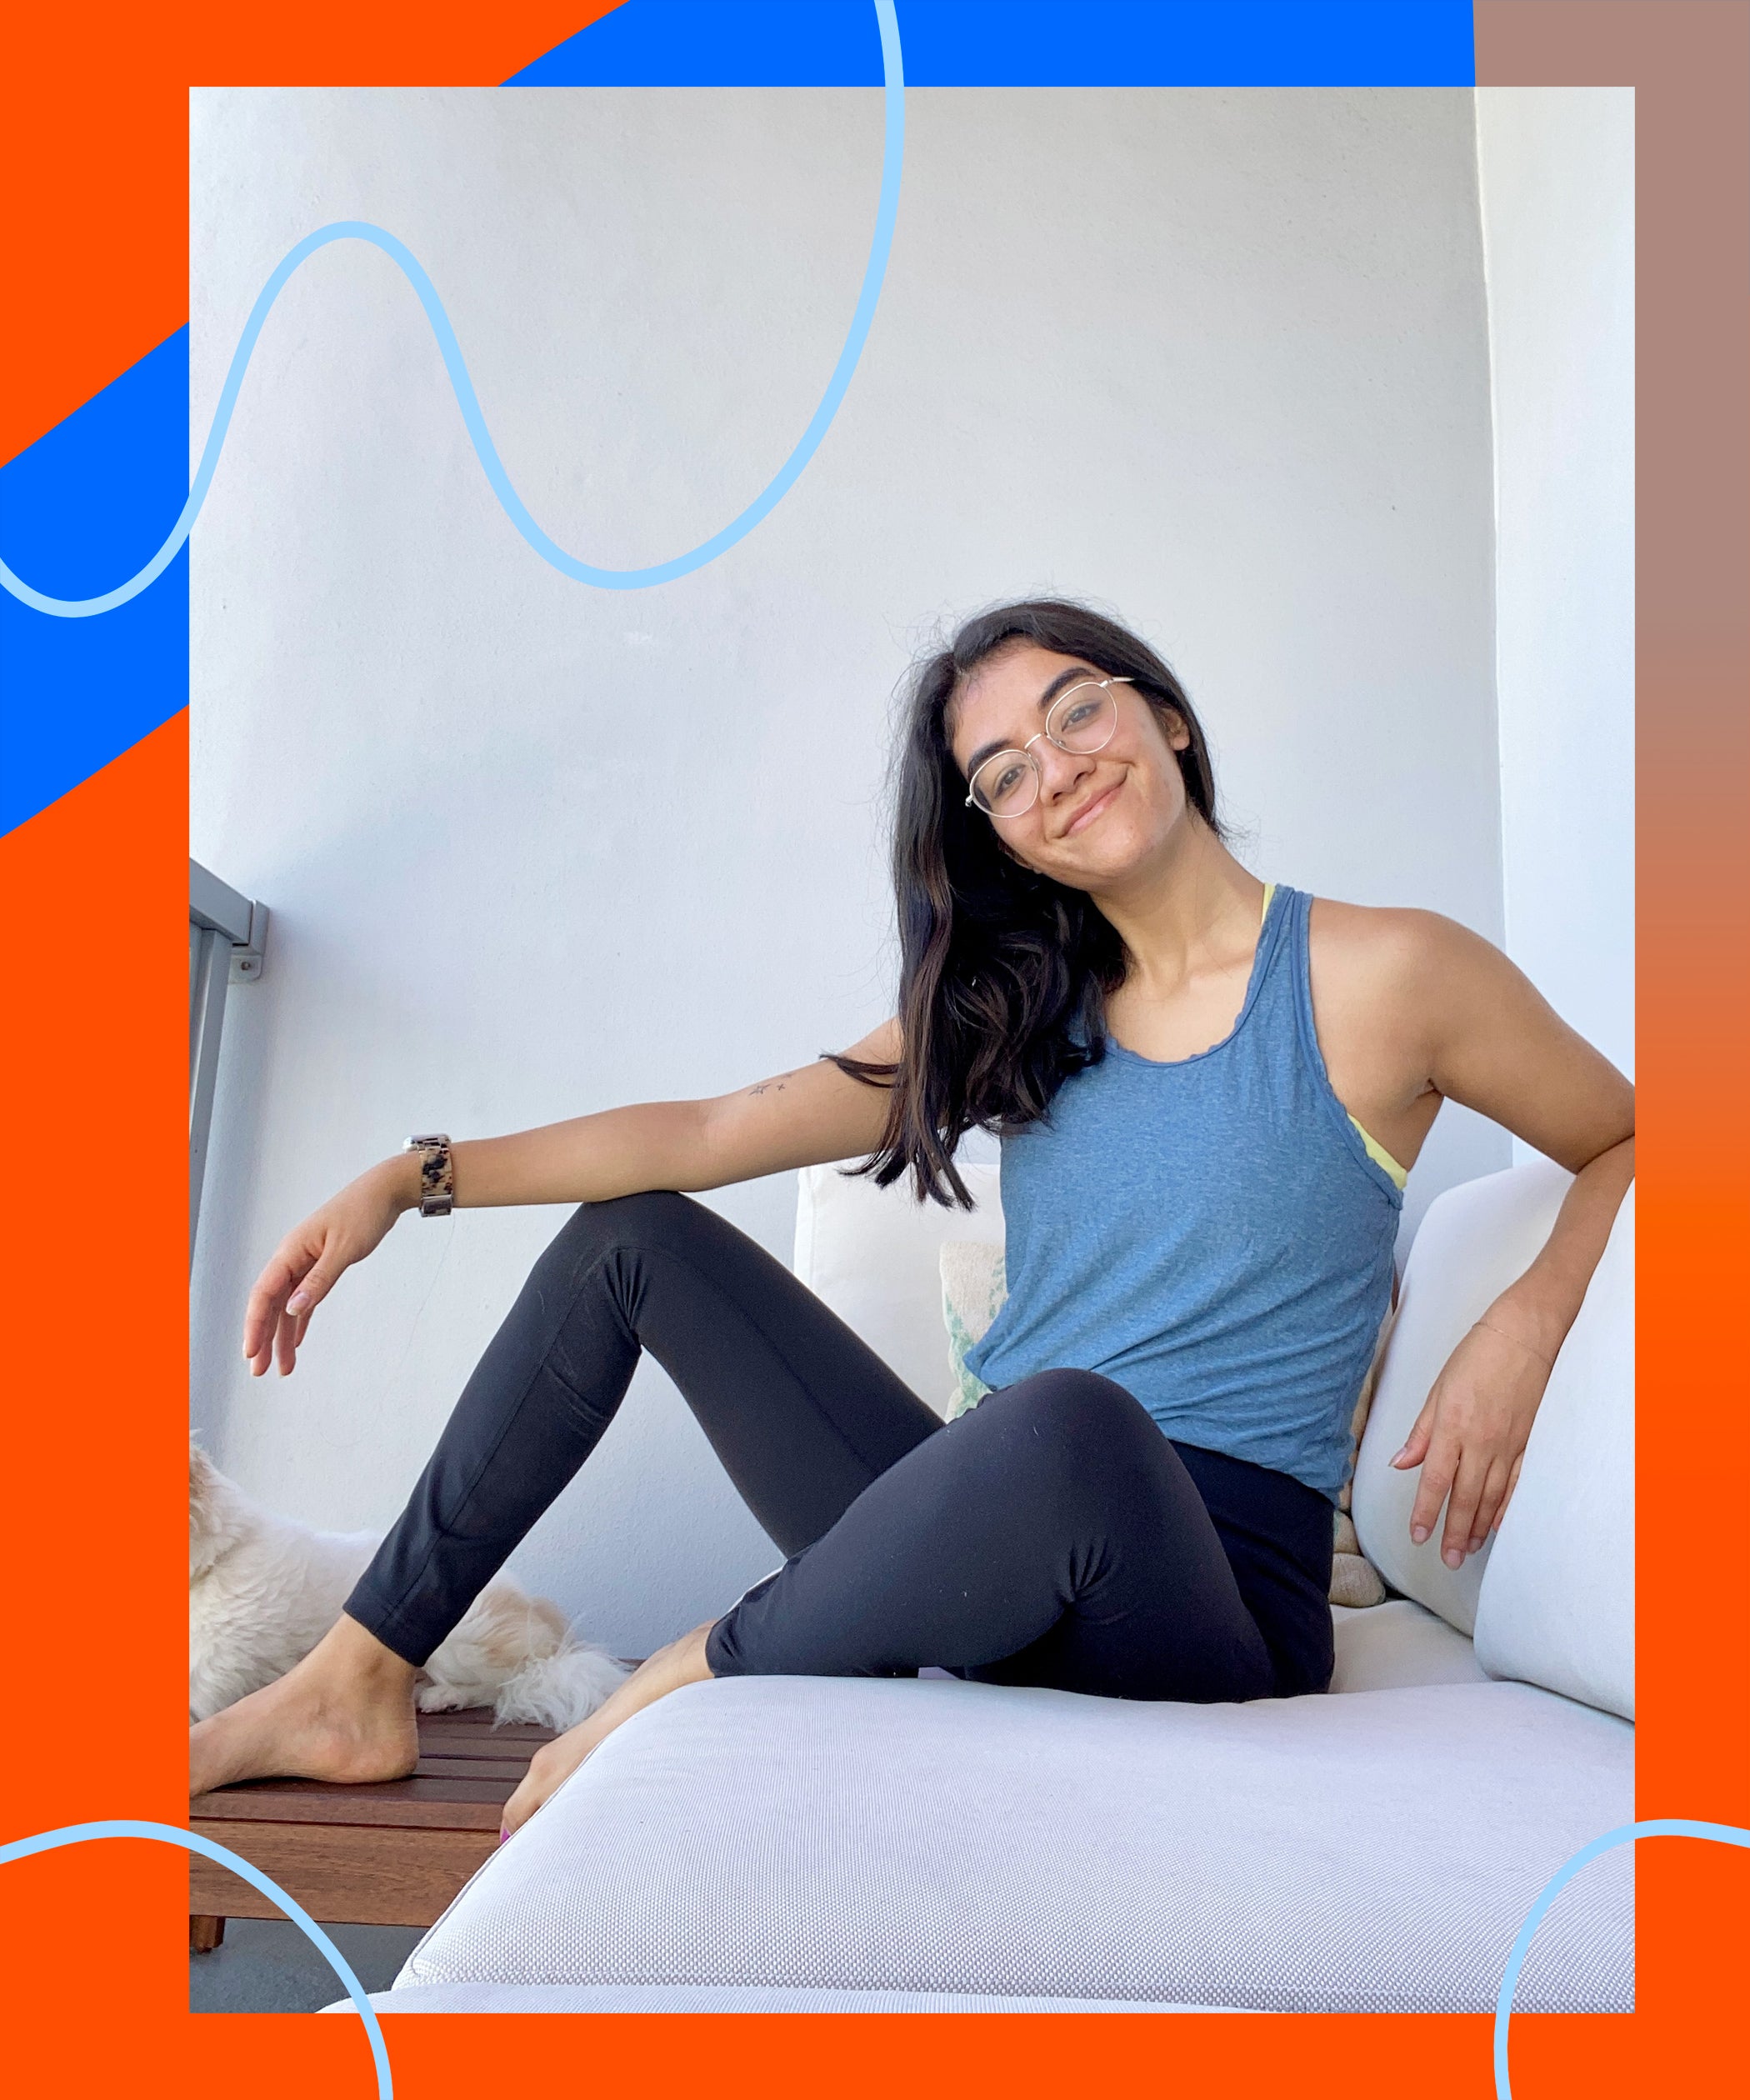 Lululemon Instill Tight Workout Leggings For Yoga 2021